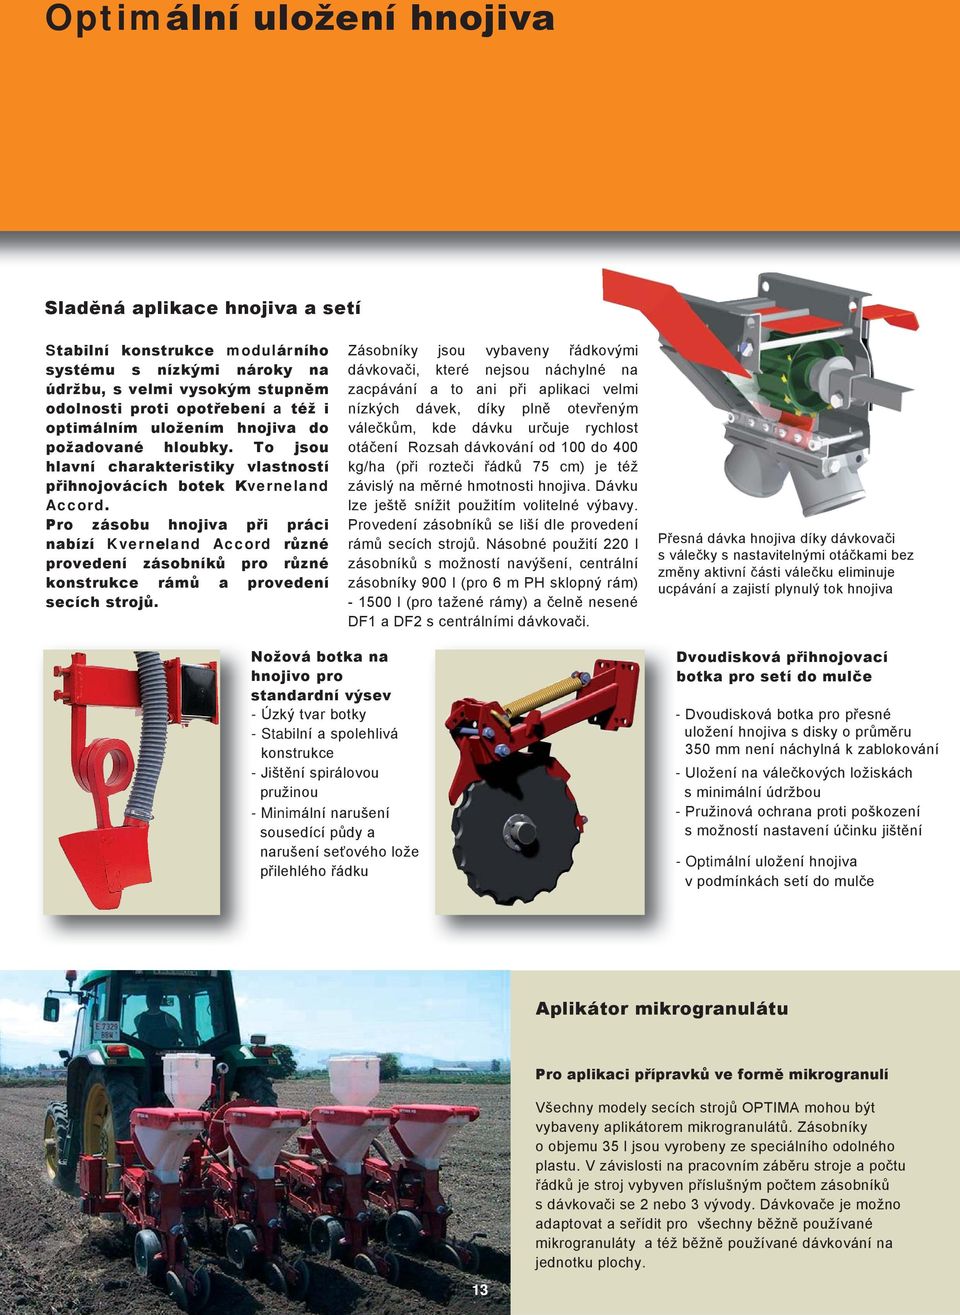 Pro zásobu hnojiva při práci nabízí Kverneland Accord různé provedení zásobníků pro různé konstrukce rámů a provedení secích strojů.